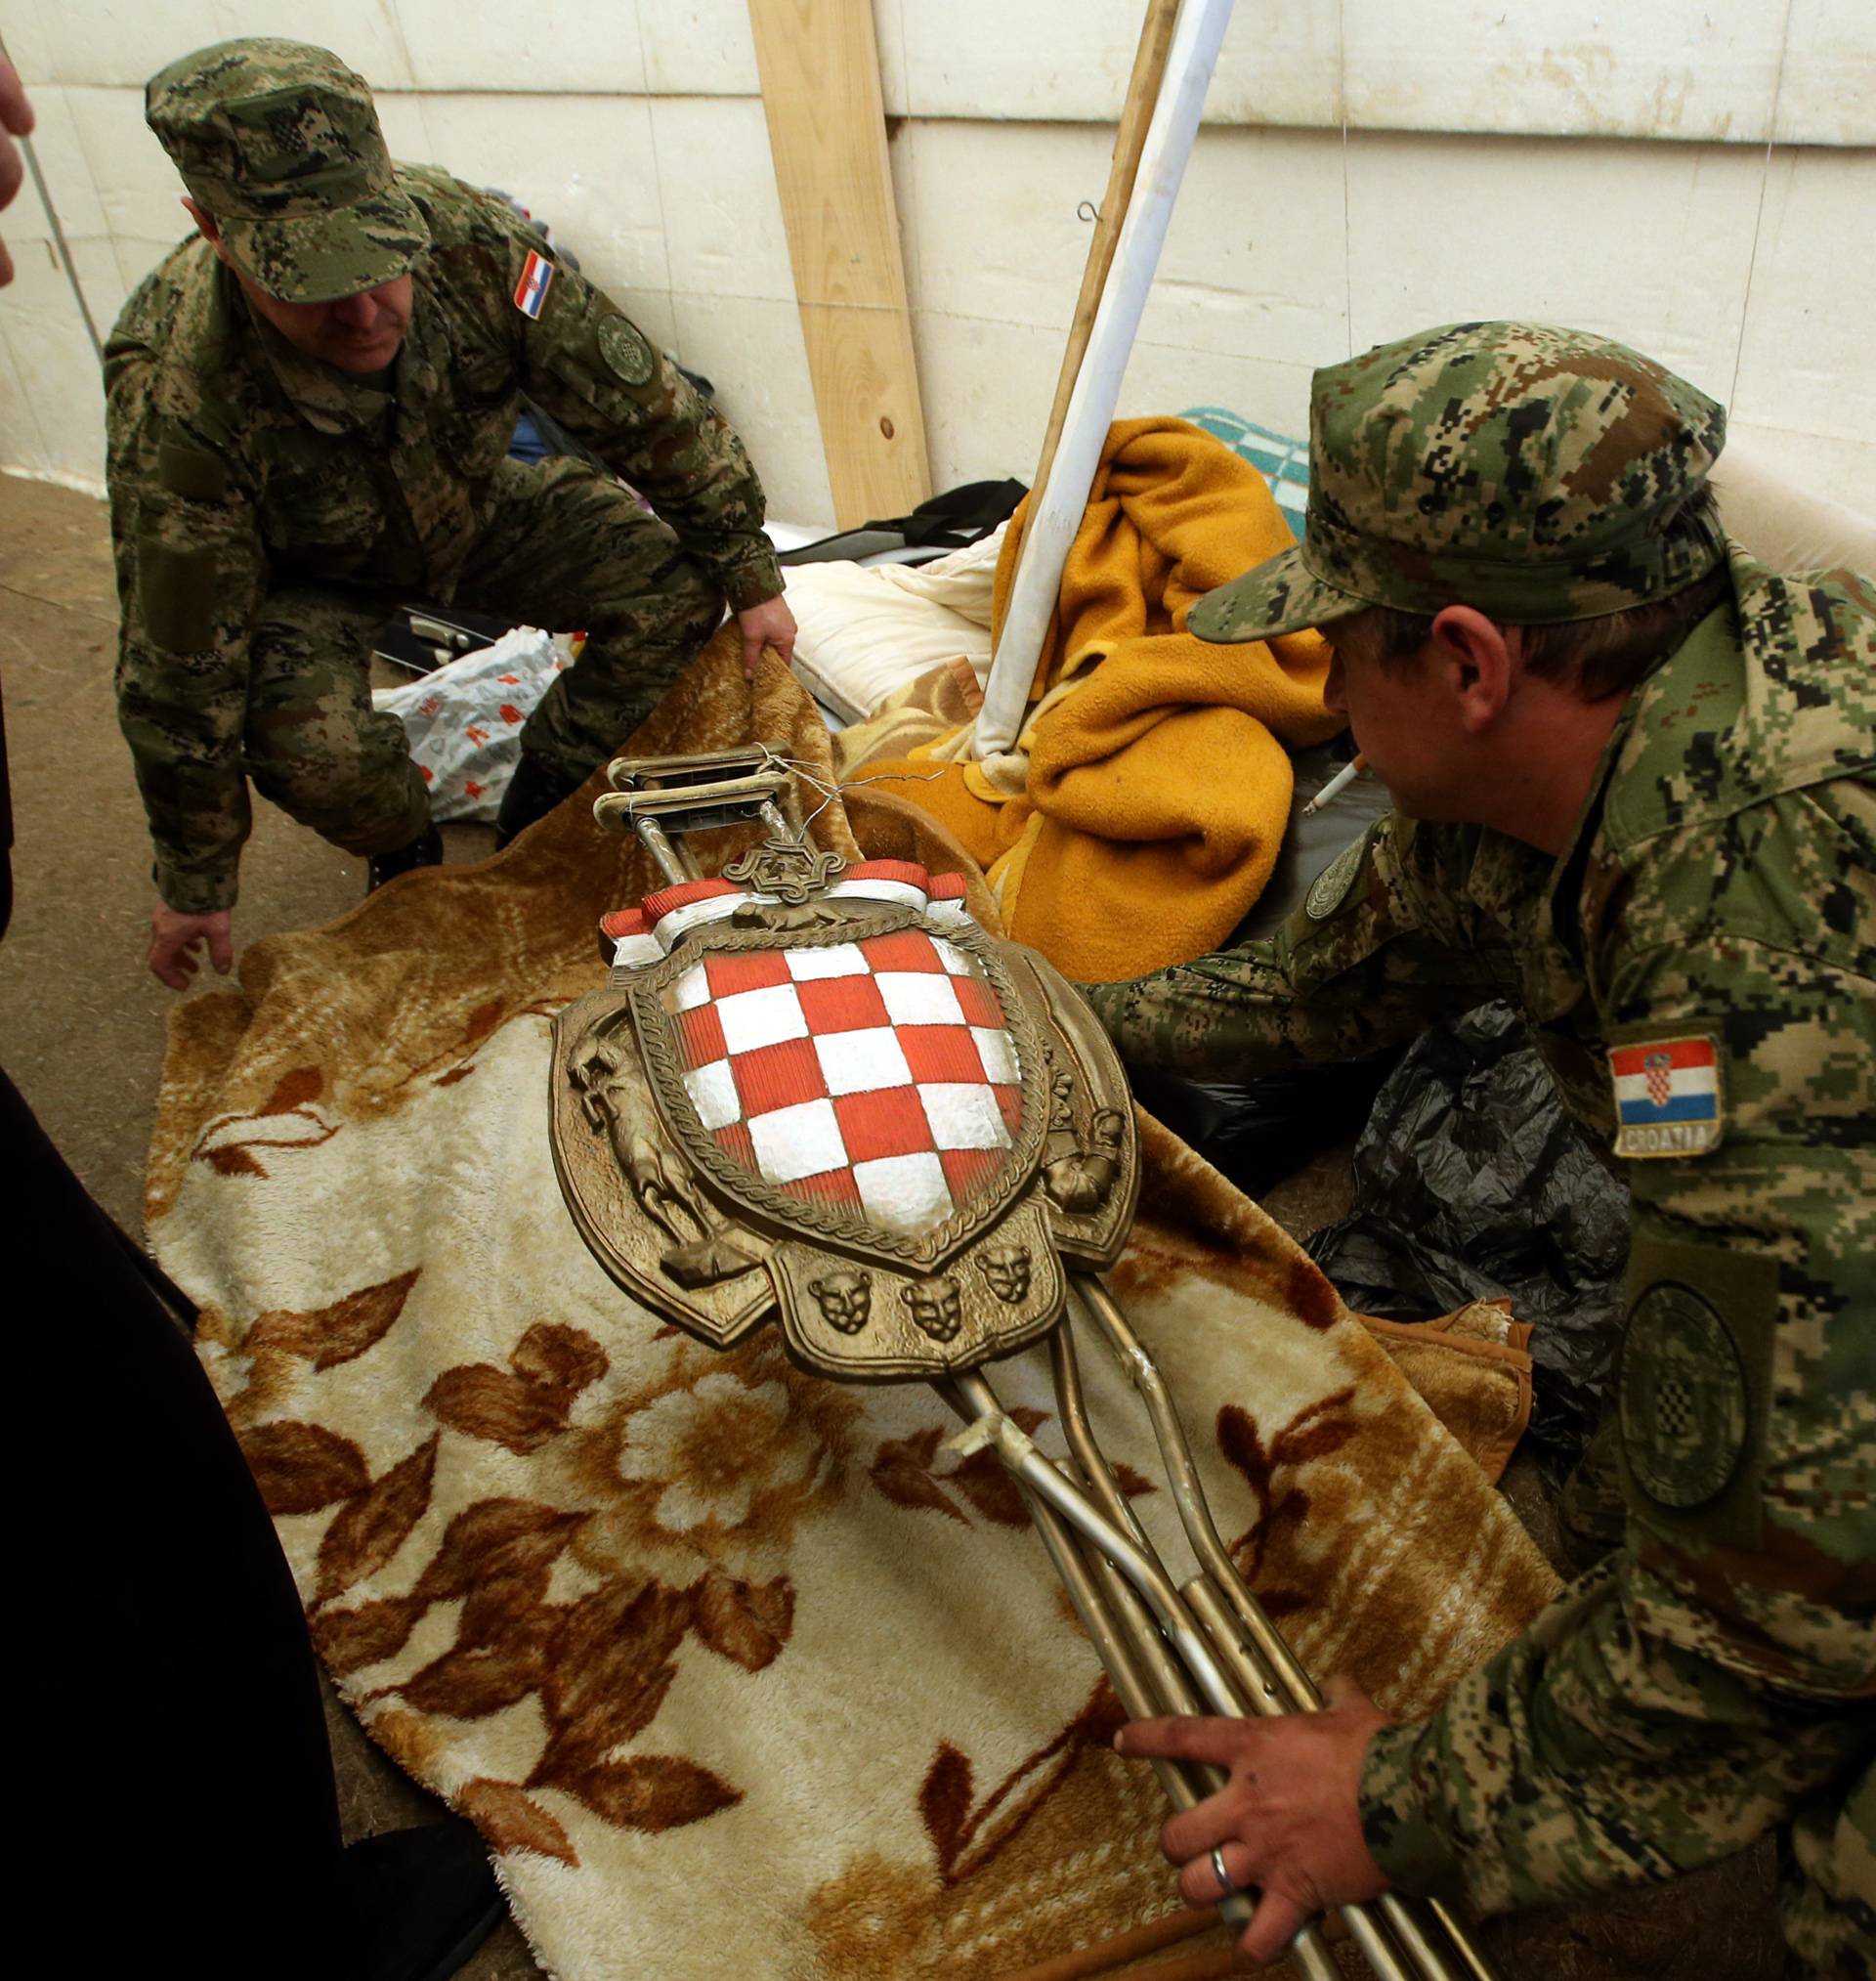 Pomaže im i vojska: Počelo je demontiranje šatora u Savskoj